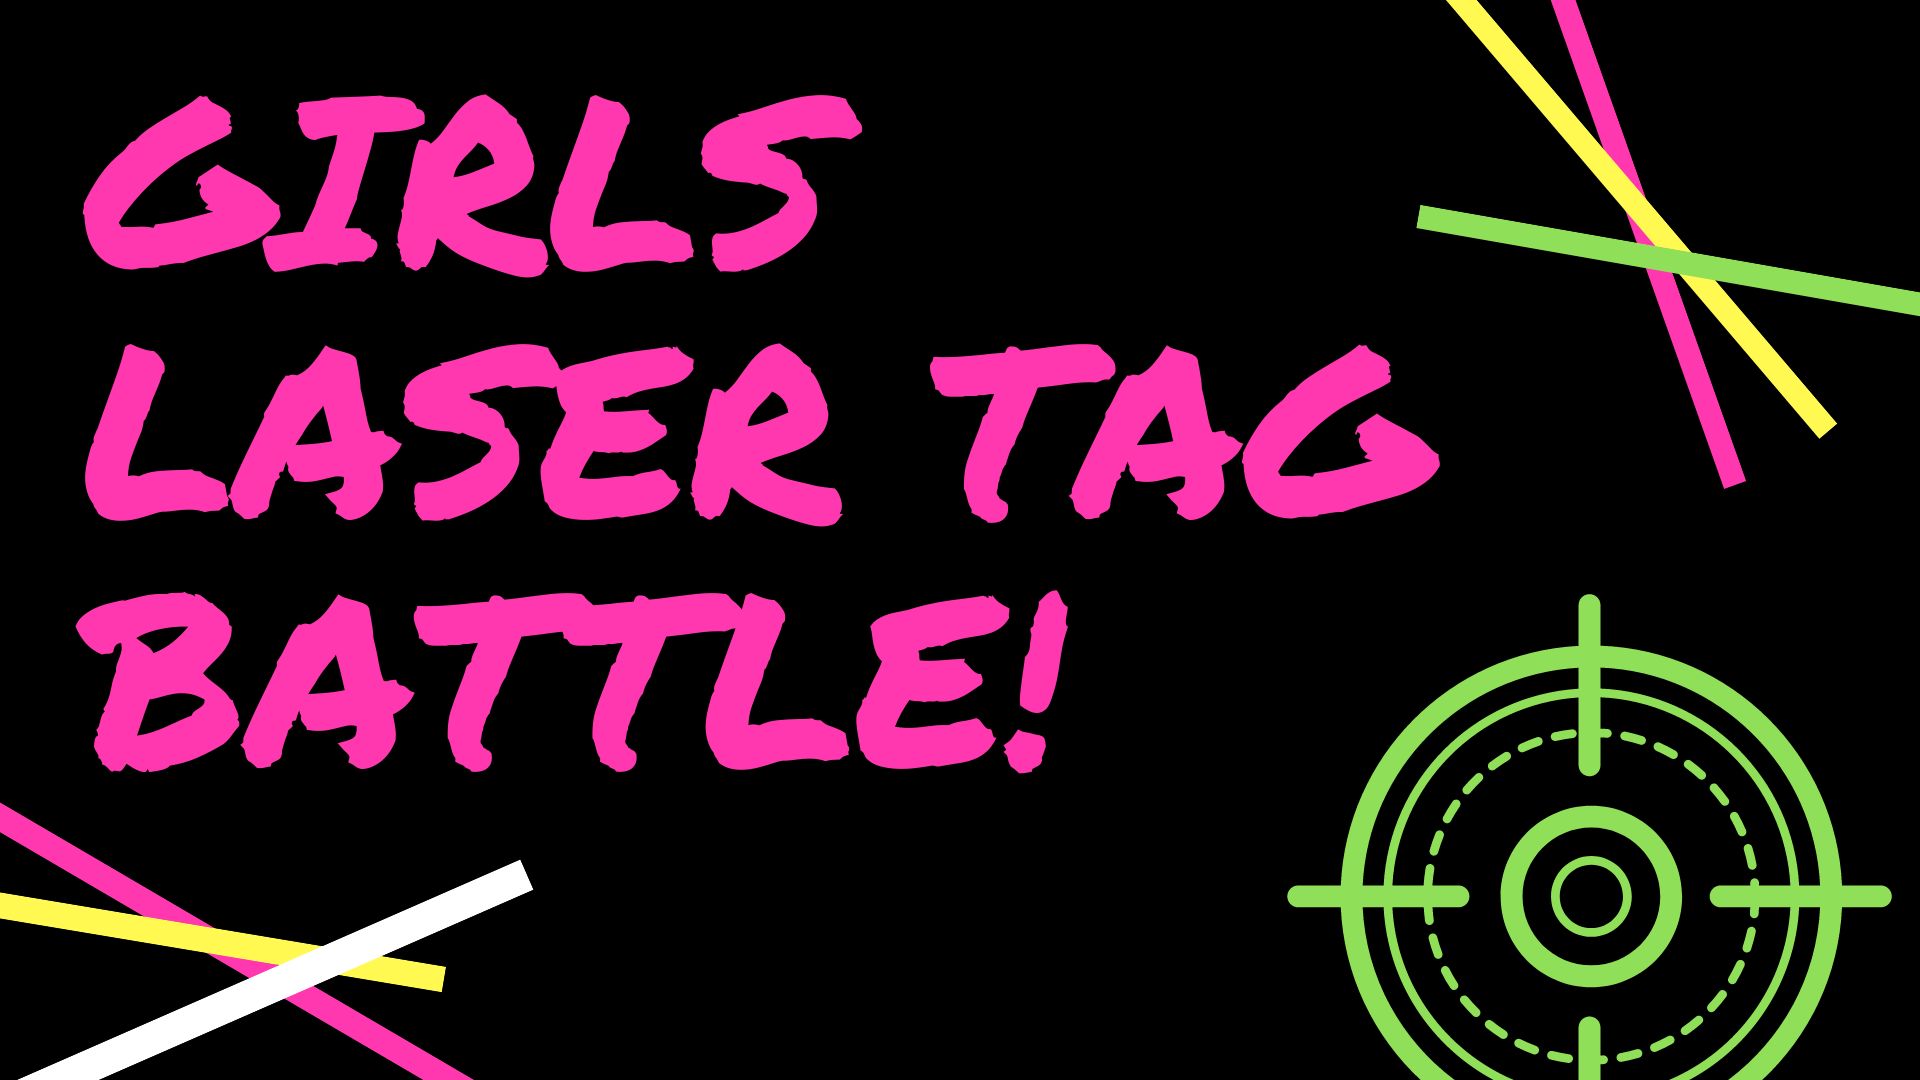 Girls Laser Tag Battle